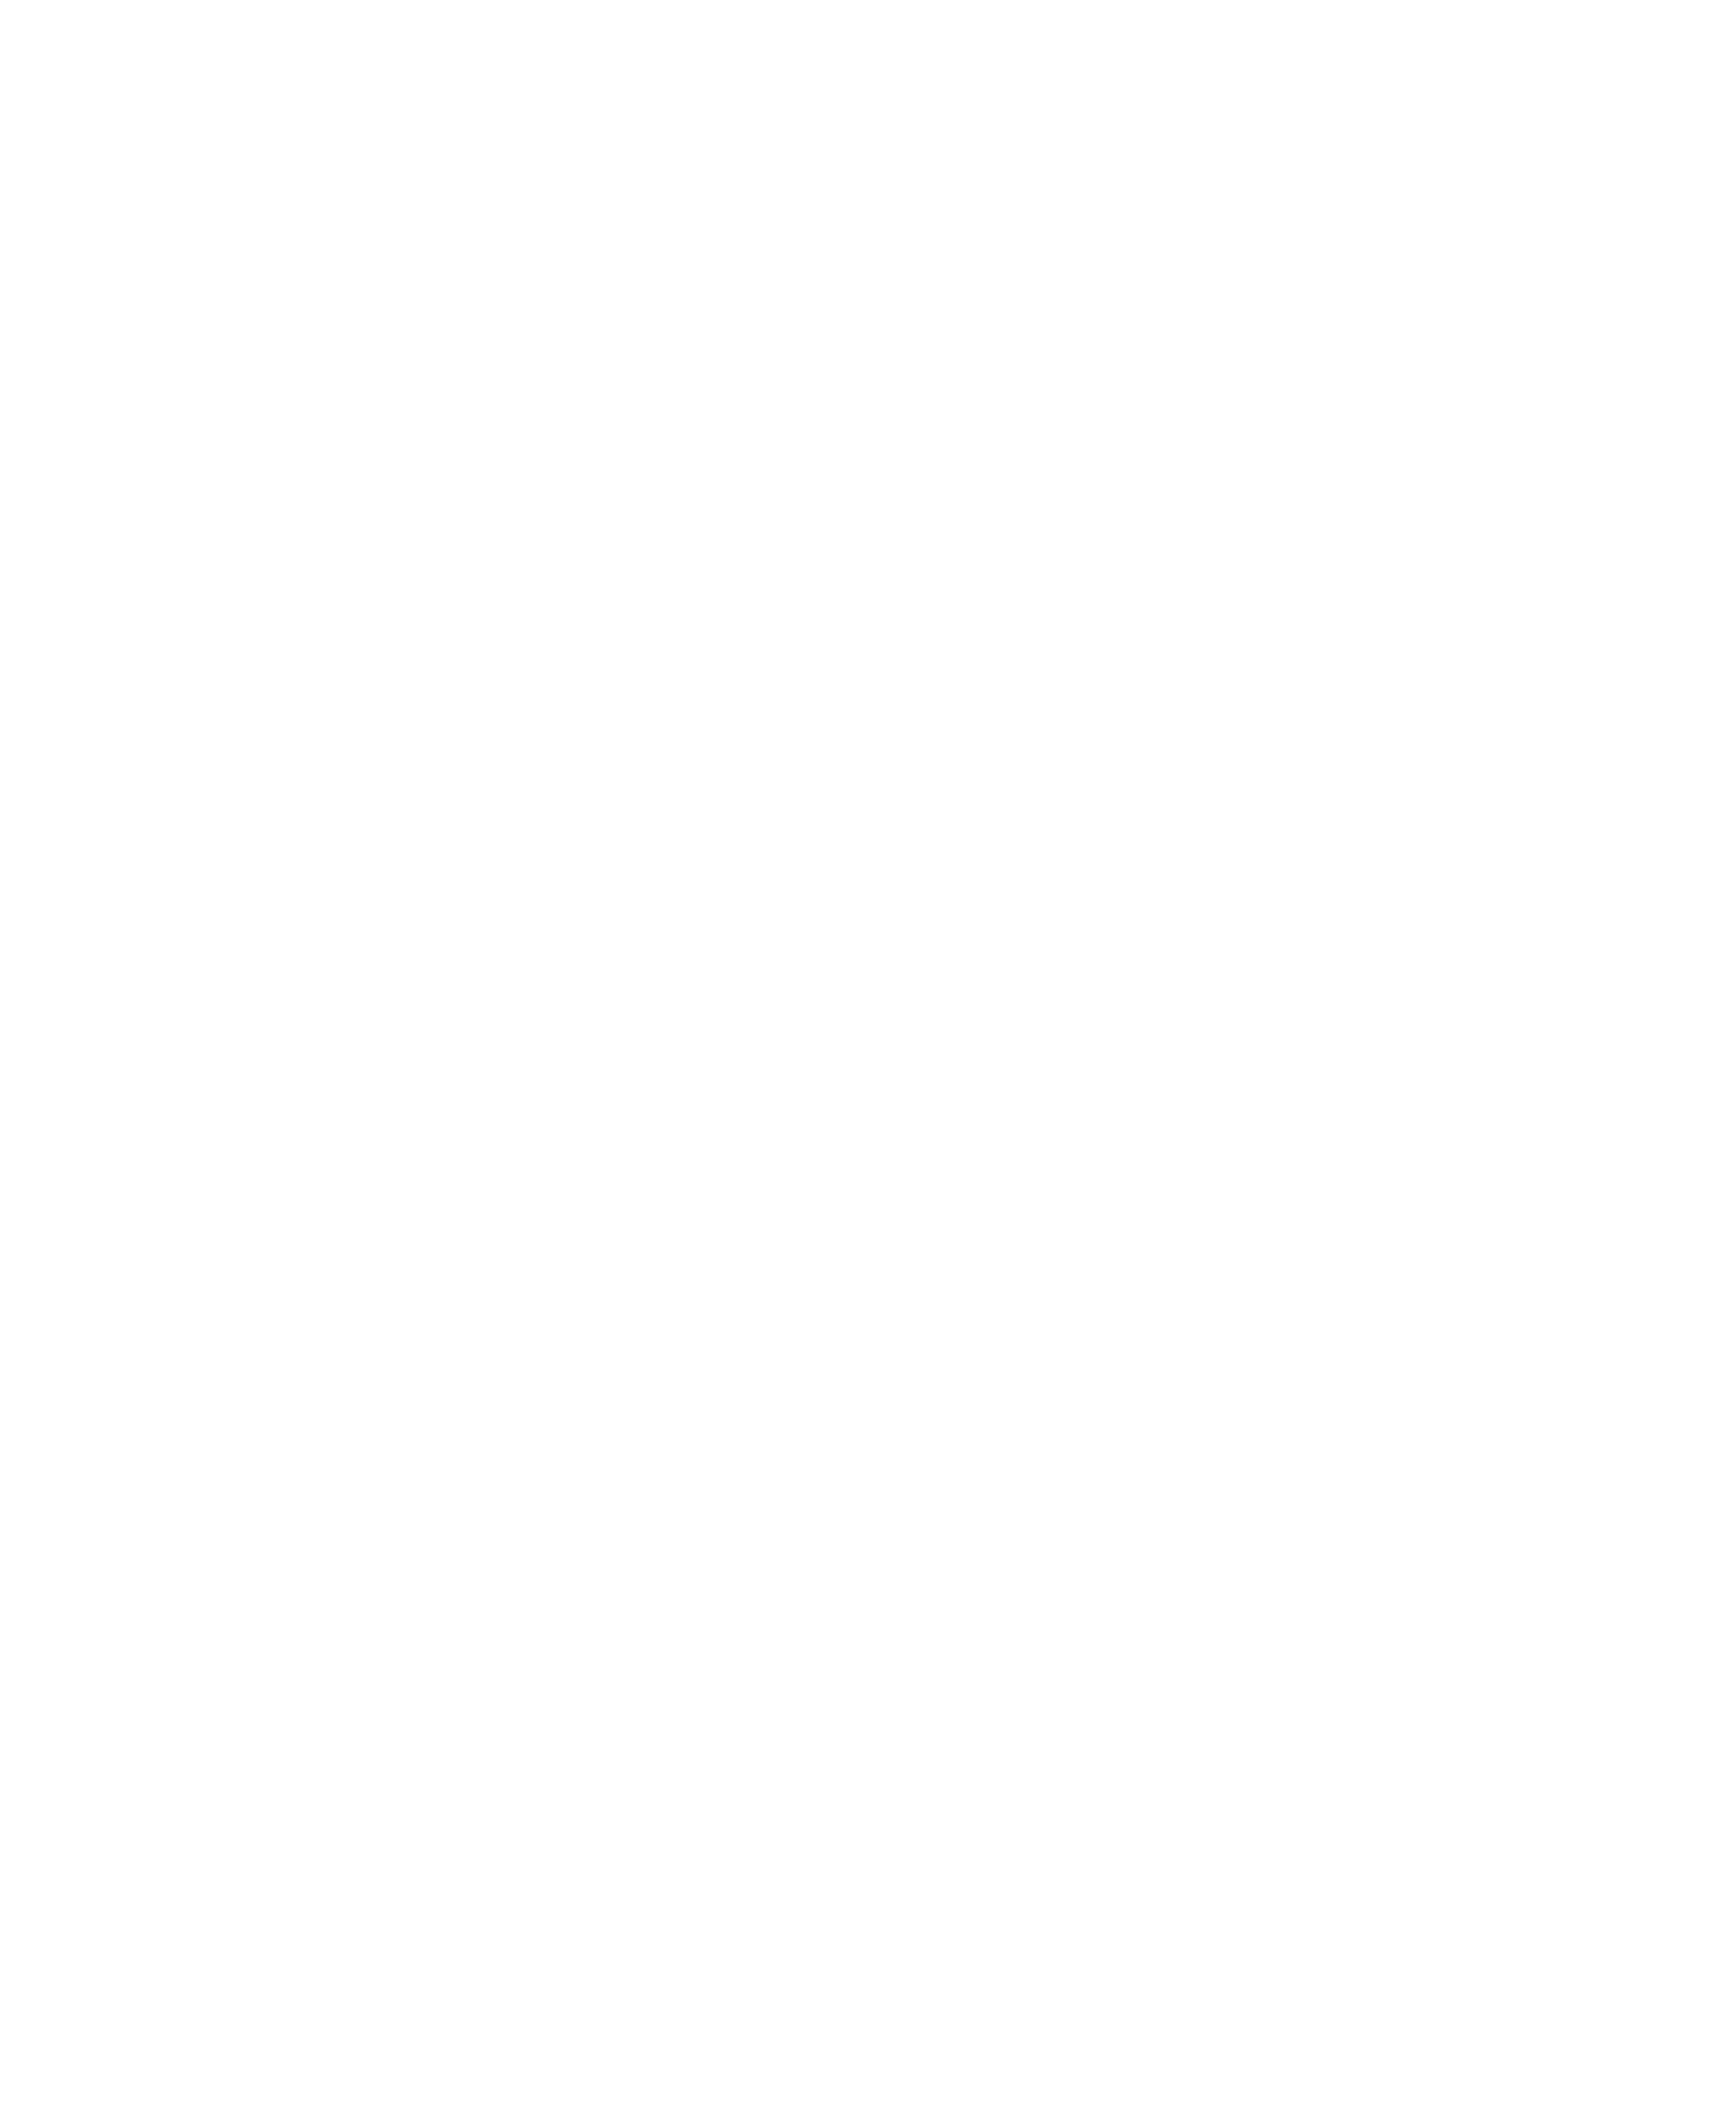 V-shop